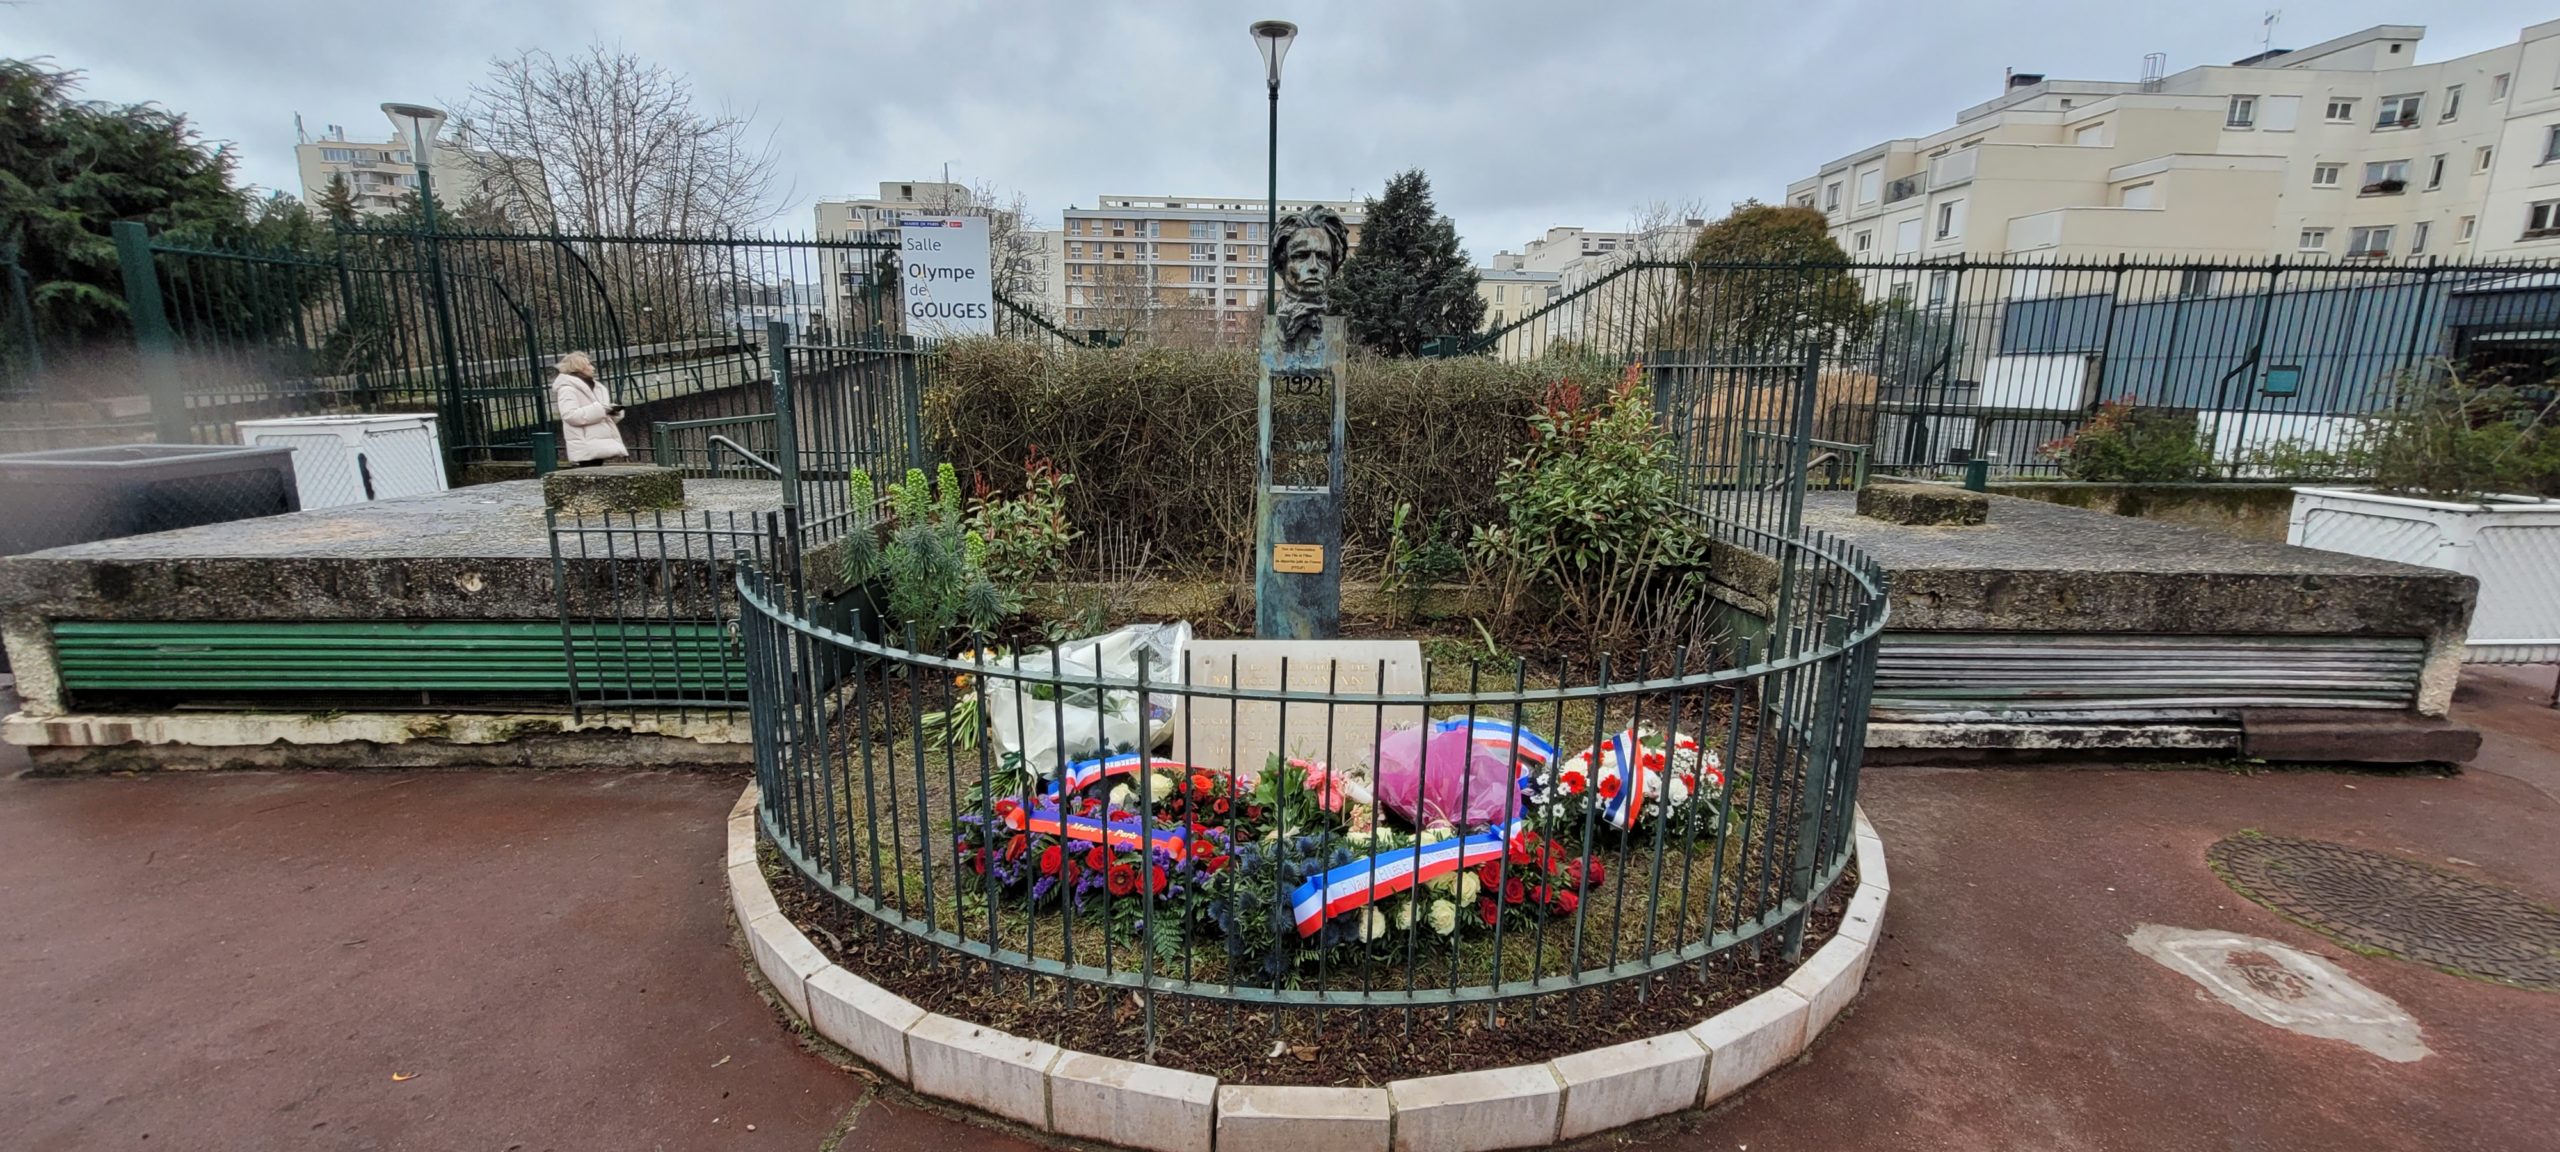 Cérémonie d’hommage à Marcel Rajman et Olga Bancic, Square Marcel Rajman, Paris XI